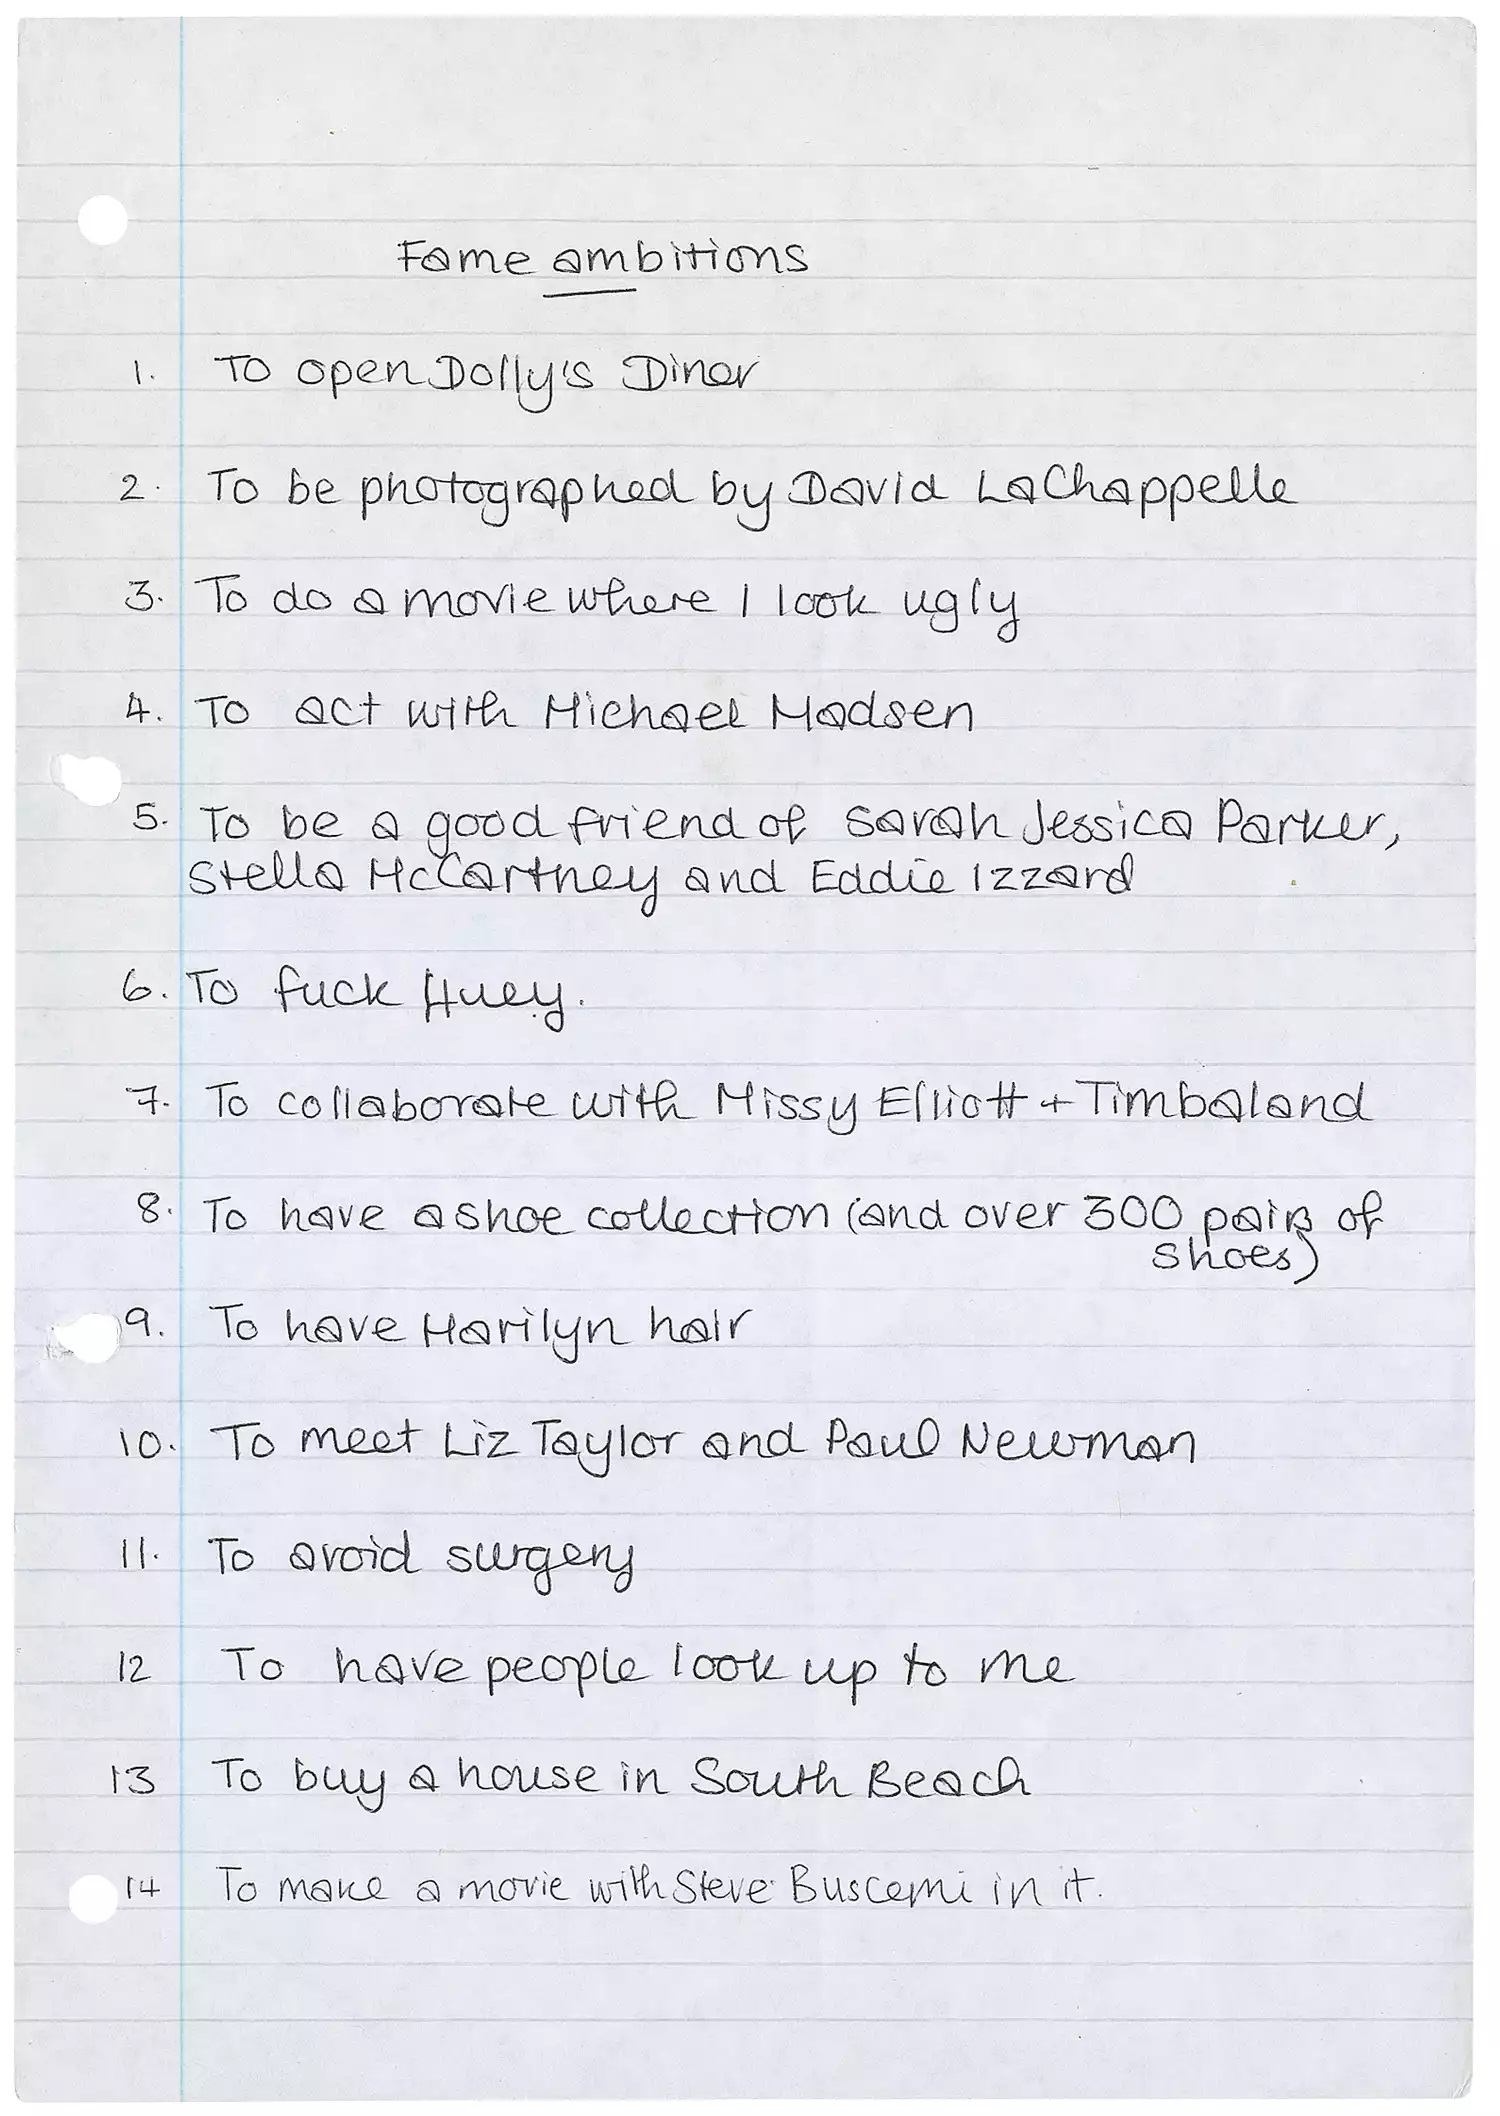 Lista dei sogni di Amy Winehouse